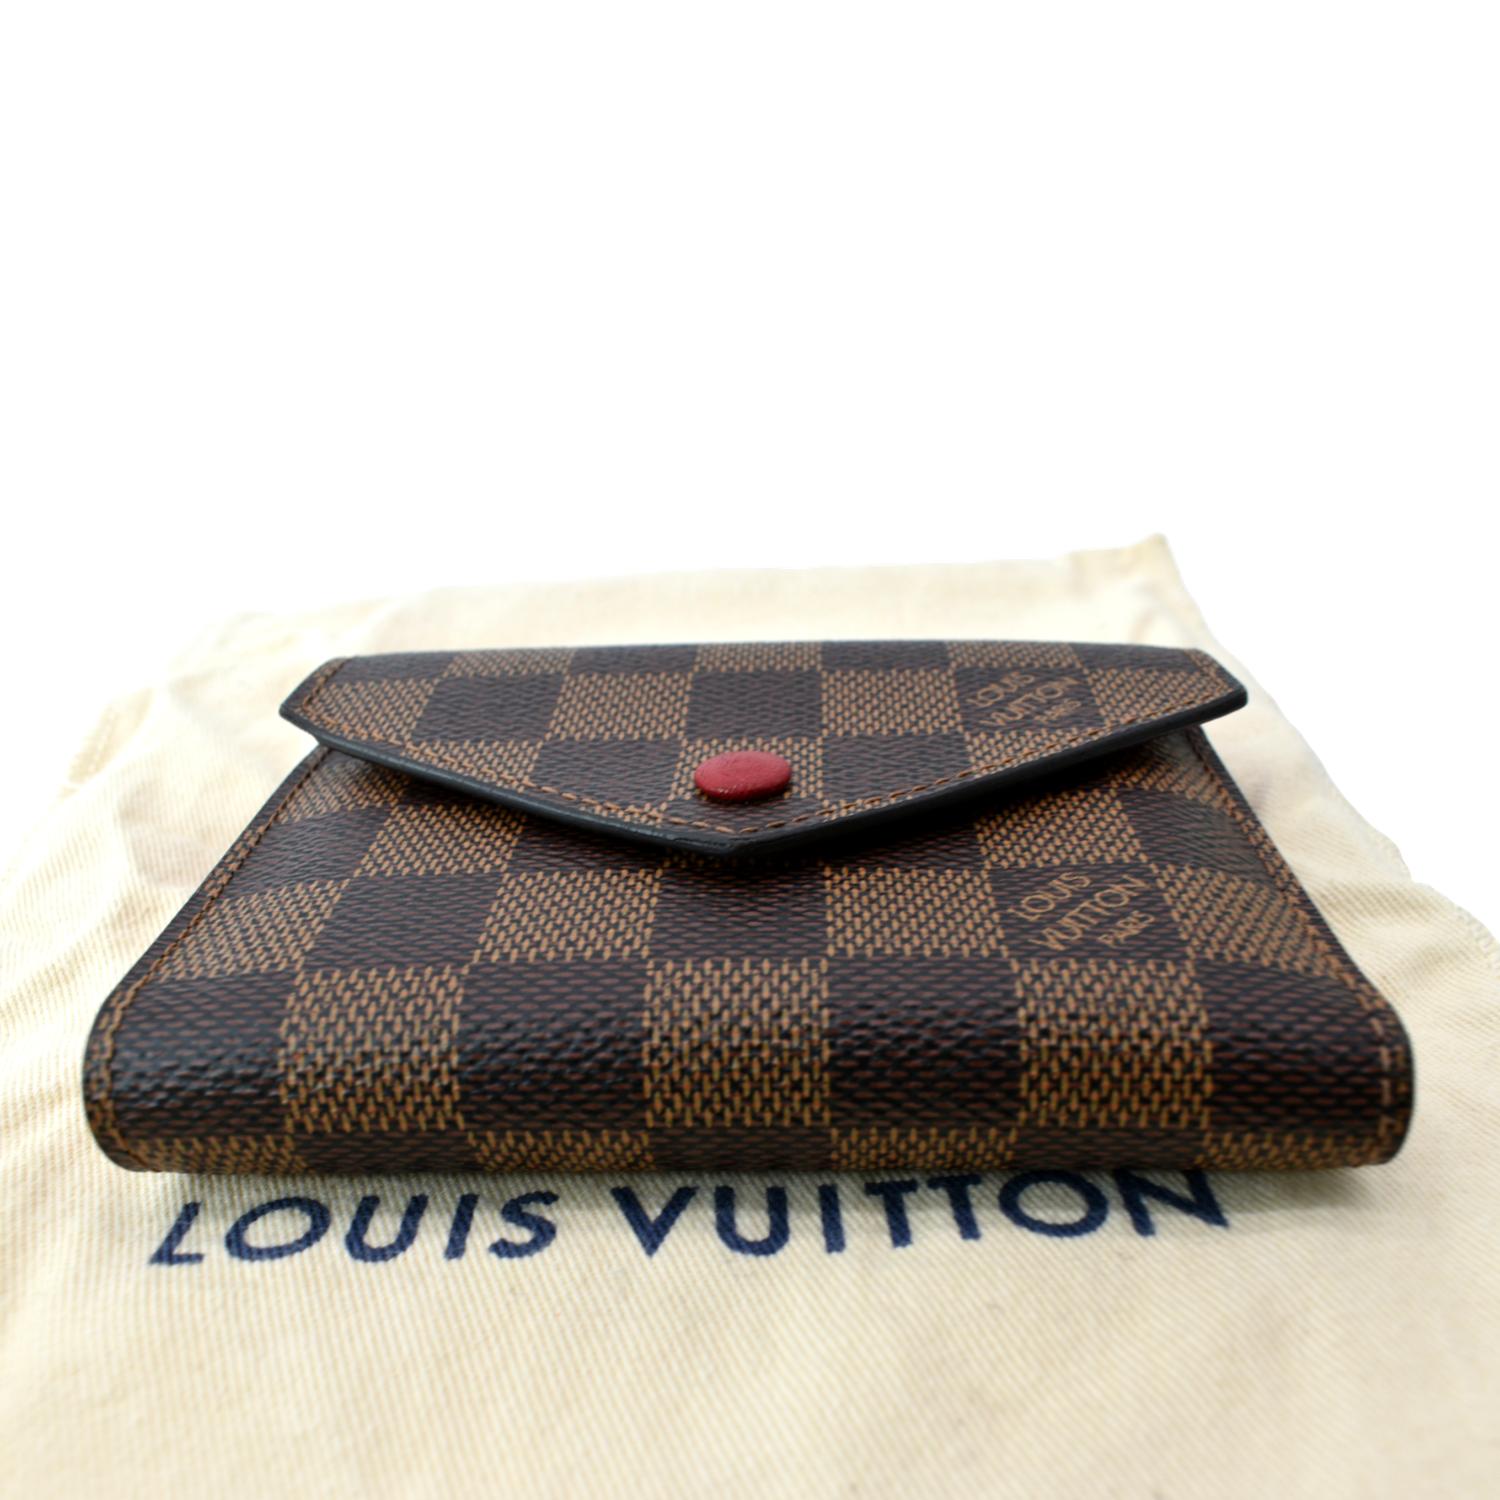 Louis Vuitton Damier Ebene Victorine Wallet Red